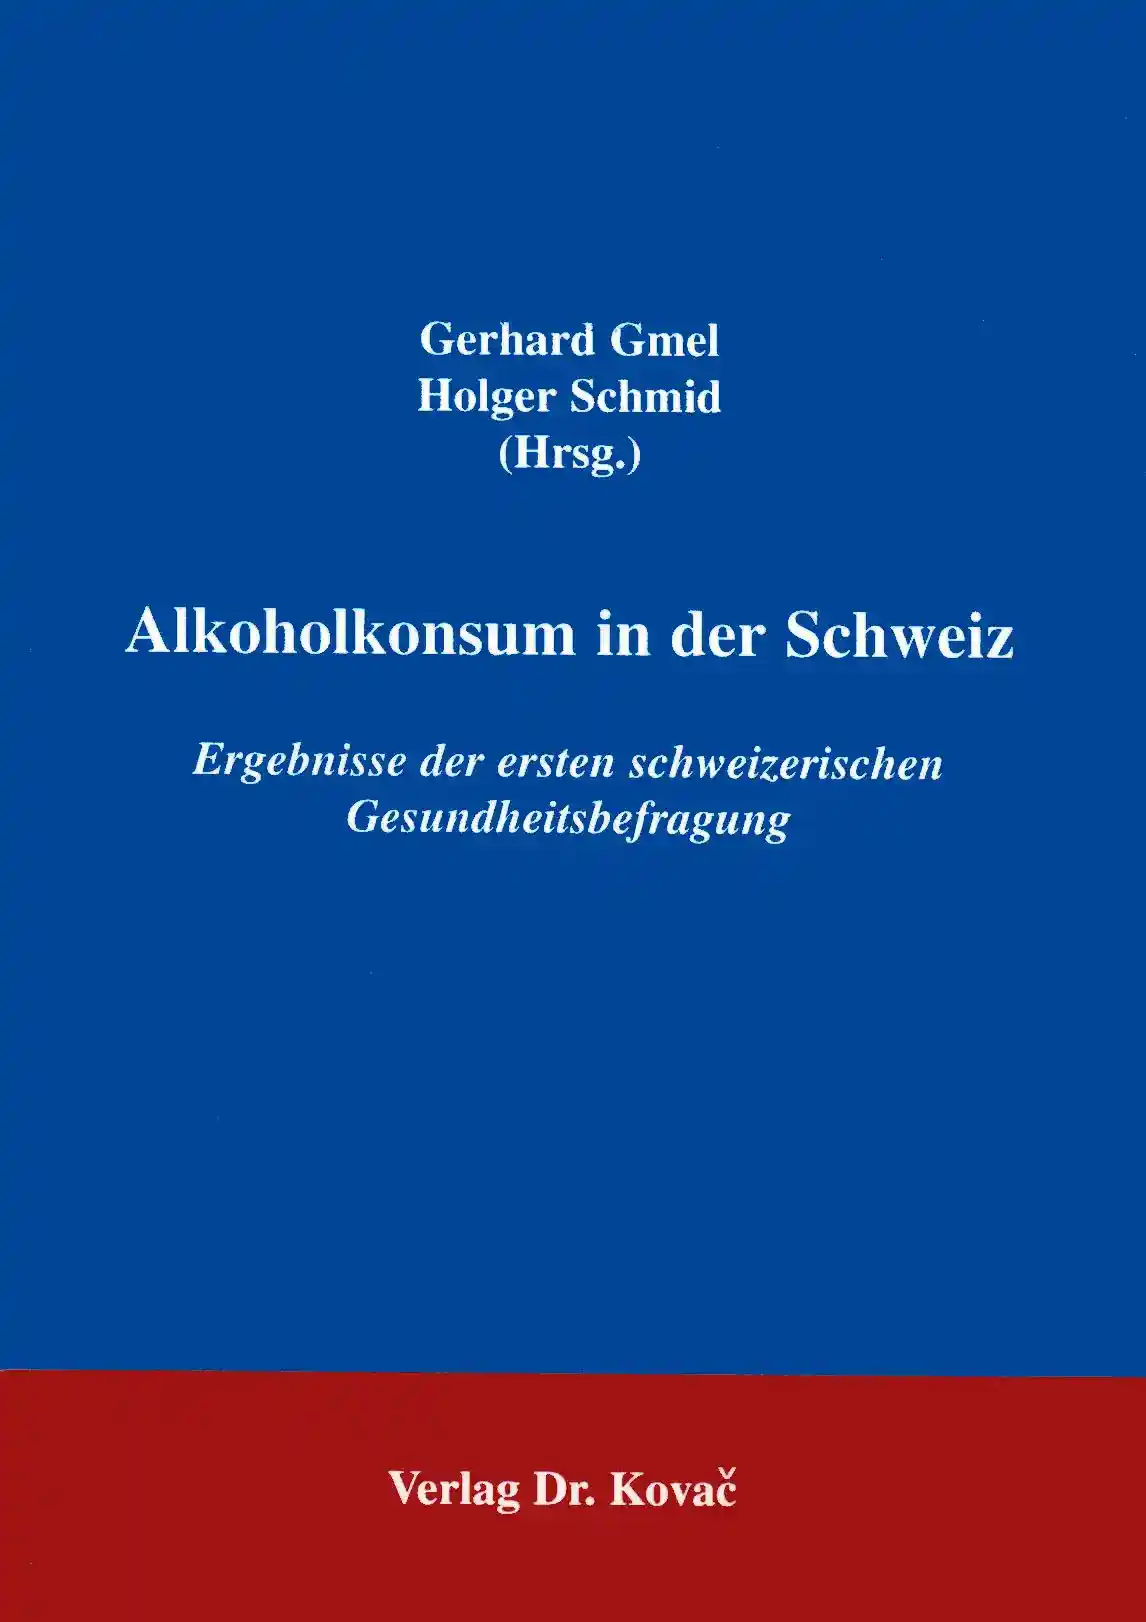 Alkoholkonsum in der Schweiz (Forschungsarbeit)